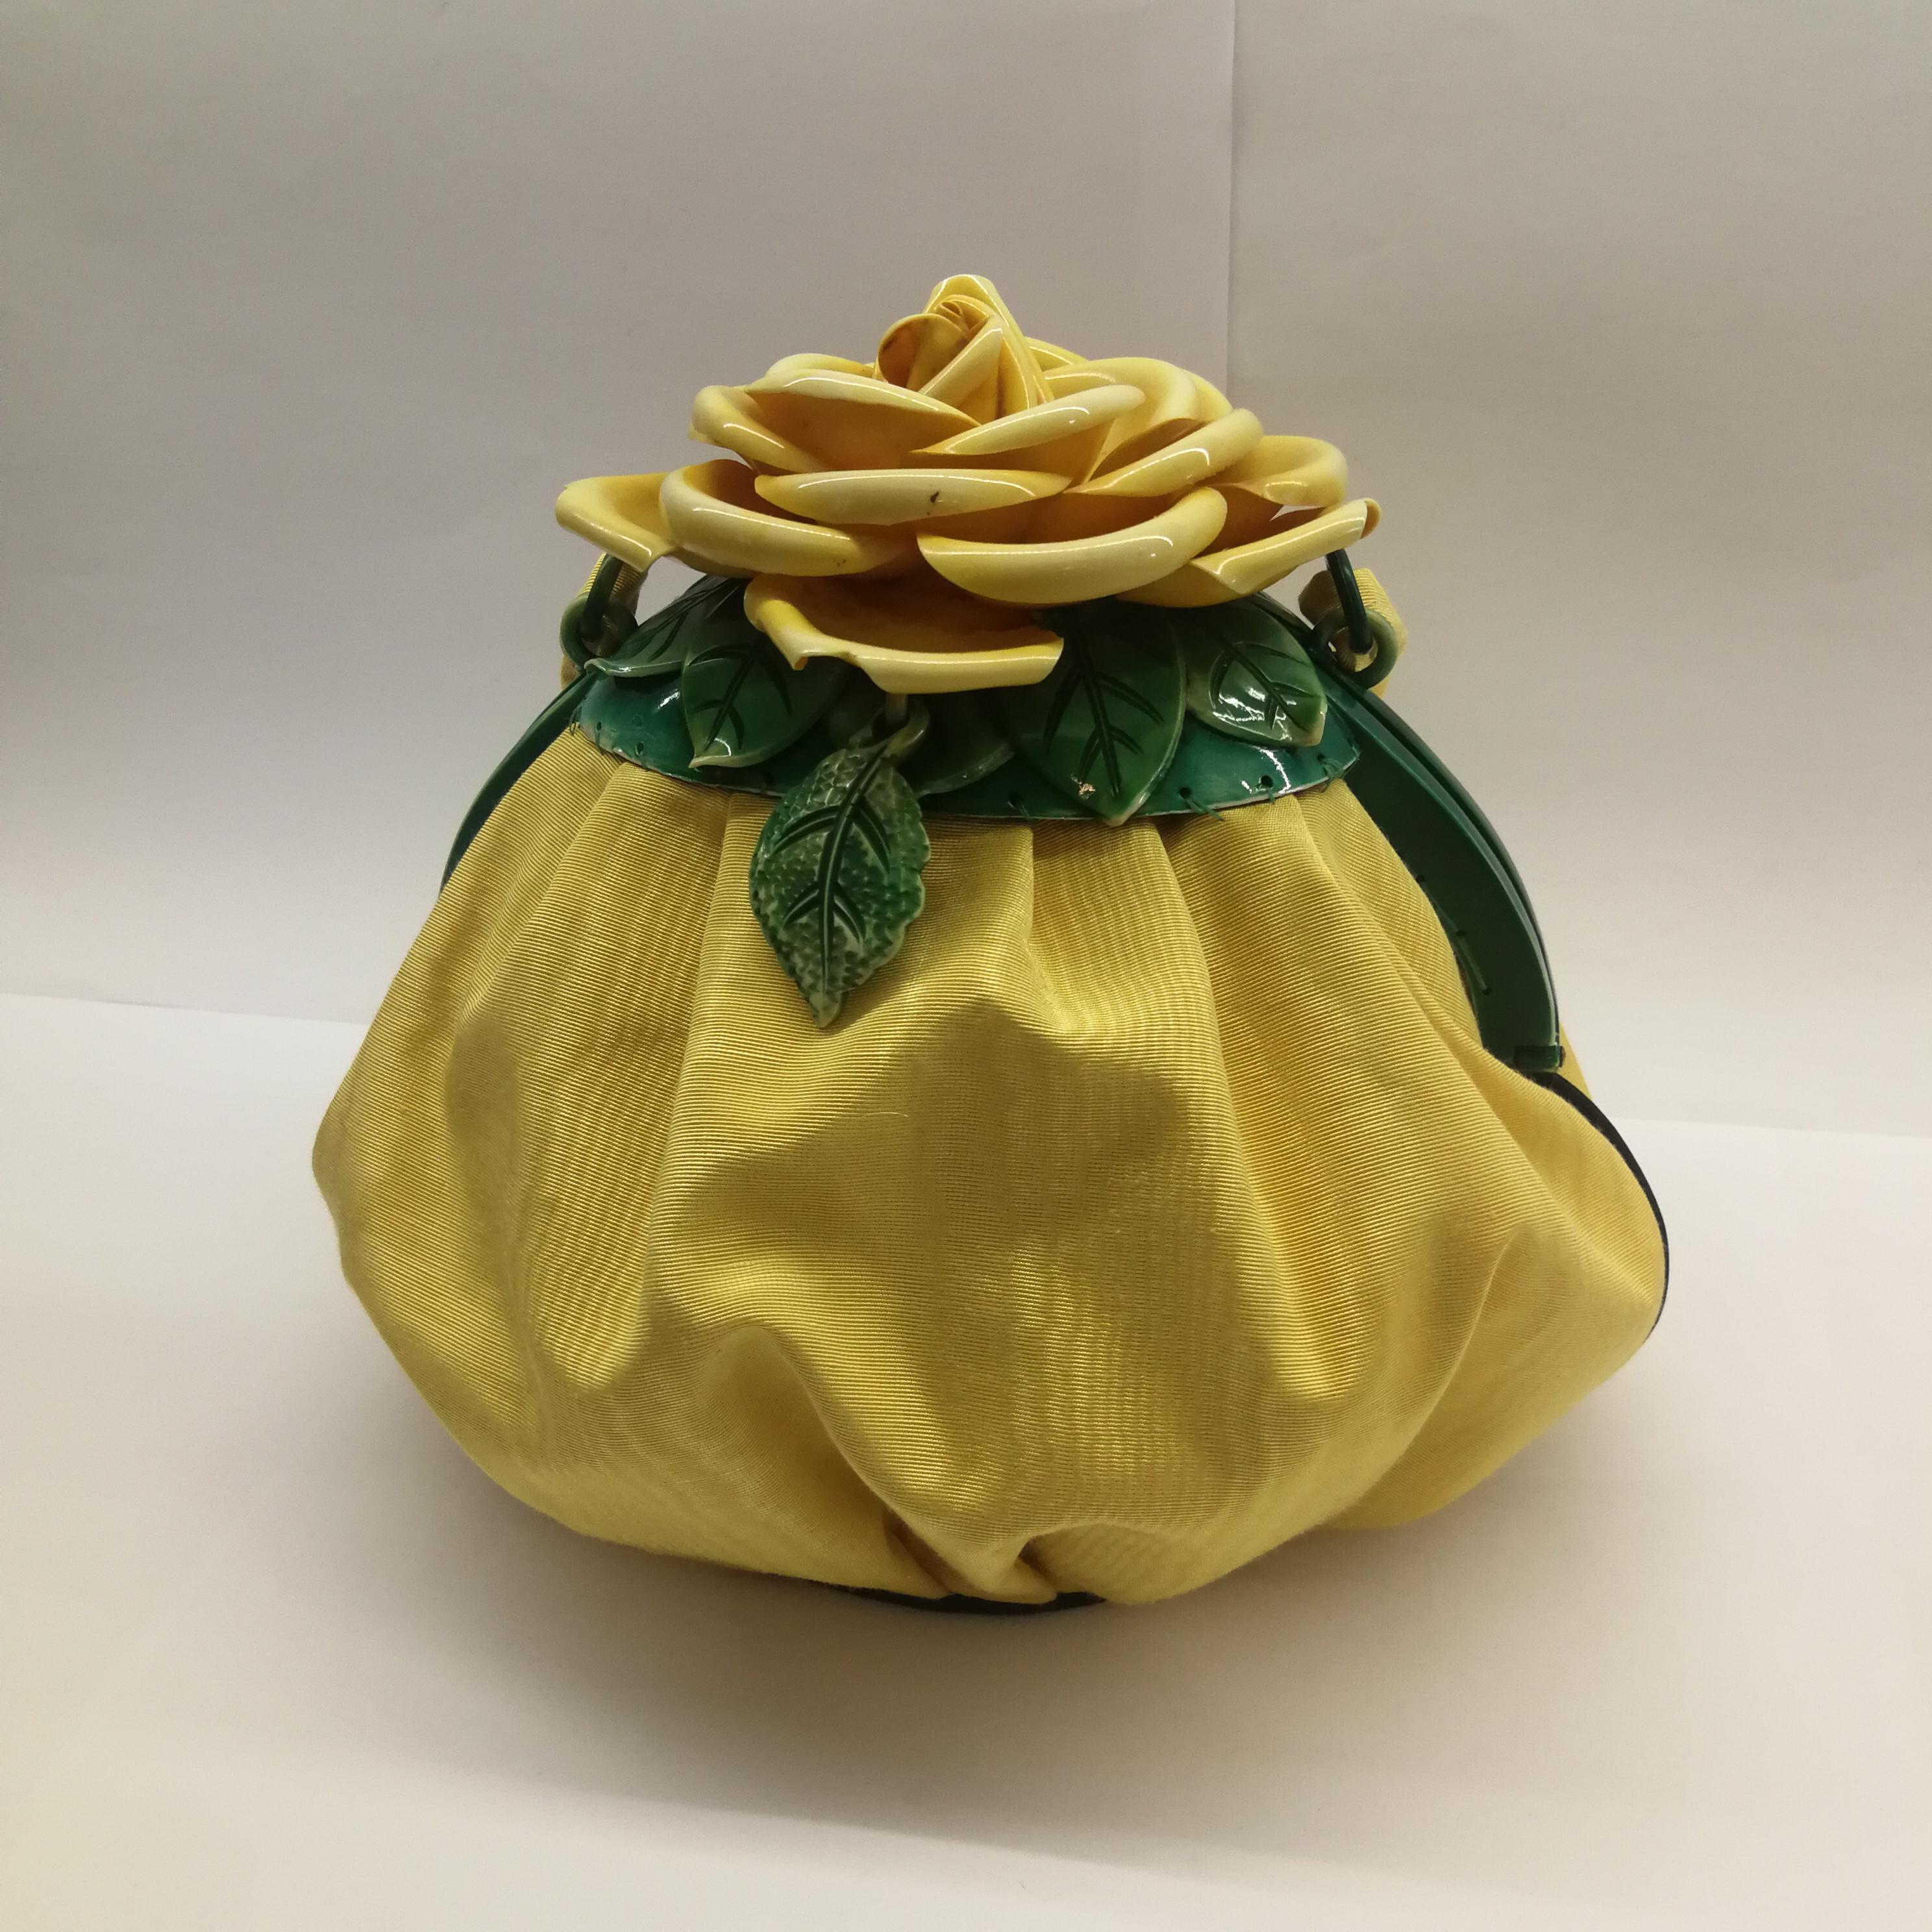 Un très rare et exceptionnel sac à main en soie moirée jaune, surmonté d'une belle 